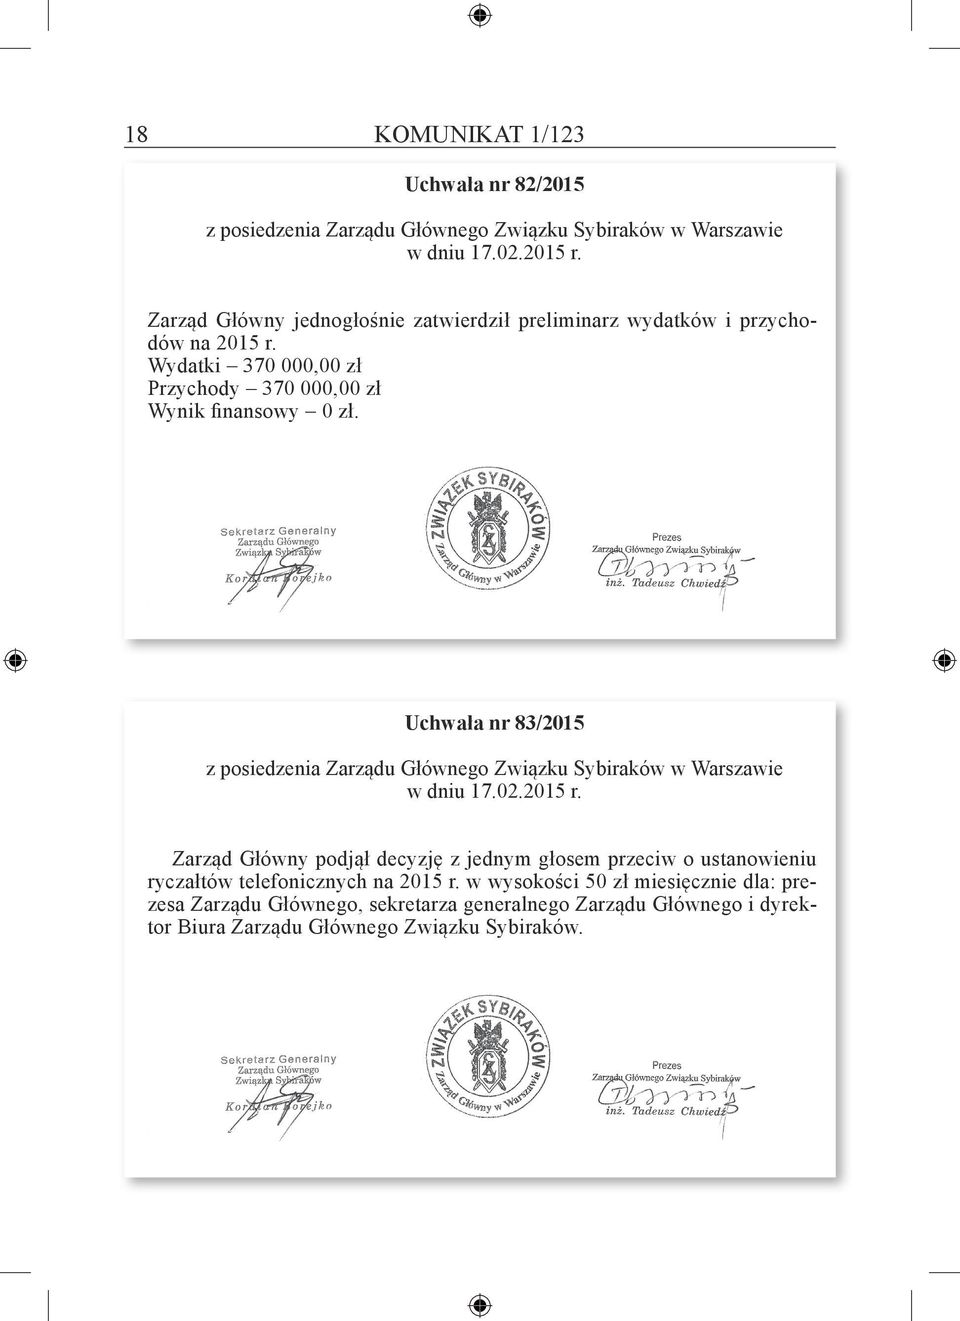 Uchwała nr 83/2015 z posiedzenia Zarządu Głównego Związku Sybiraków w Warszawie w dniu 17.02.2015 r.